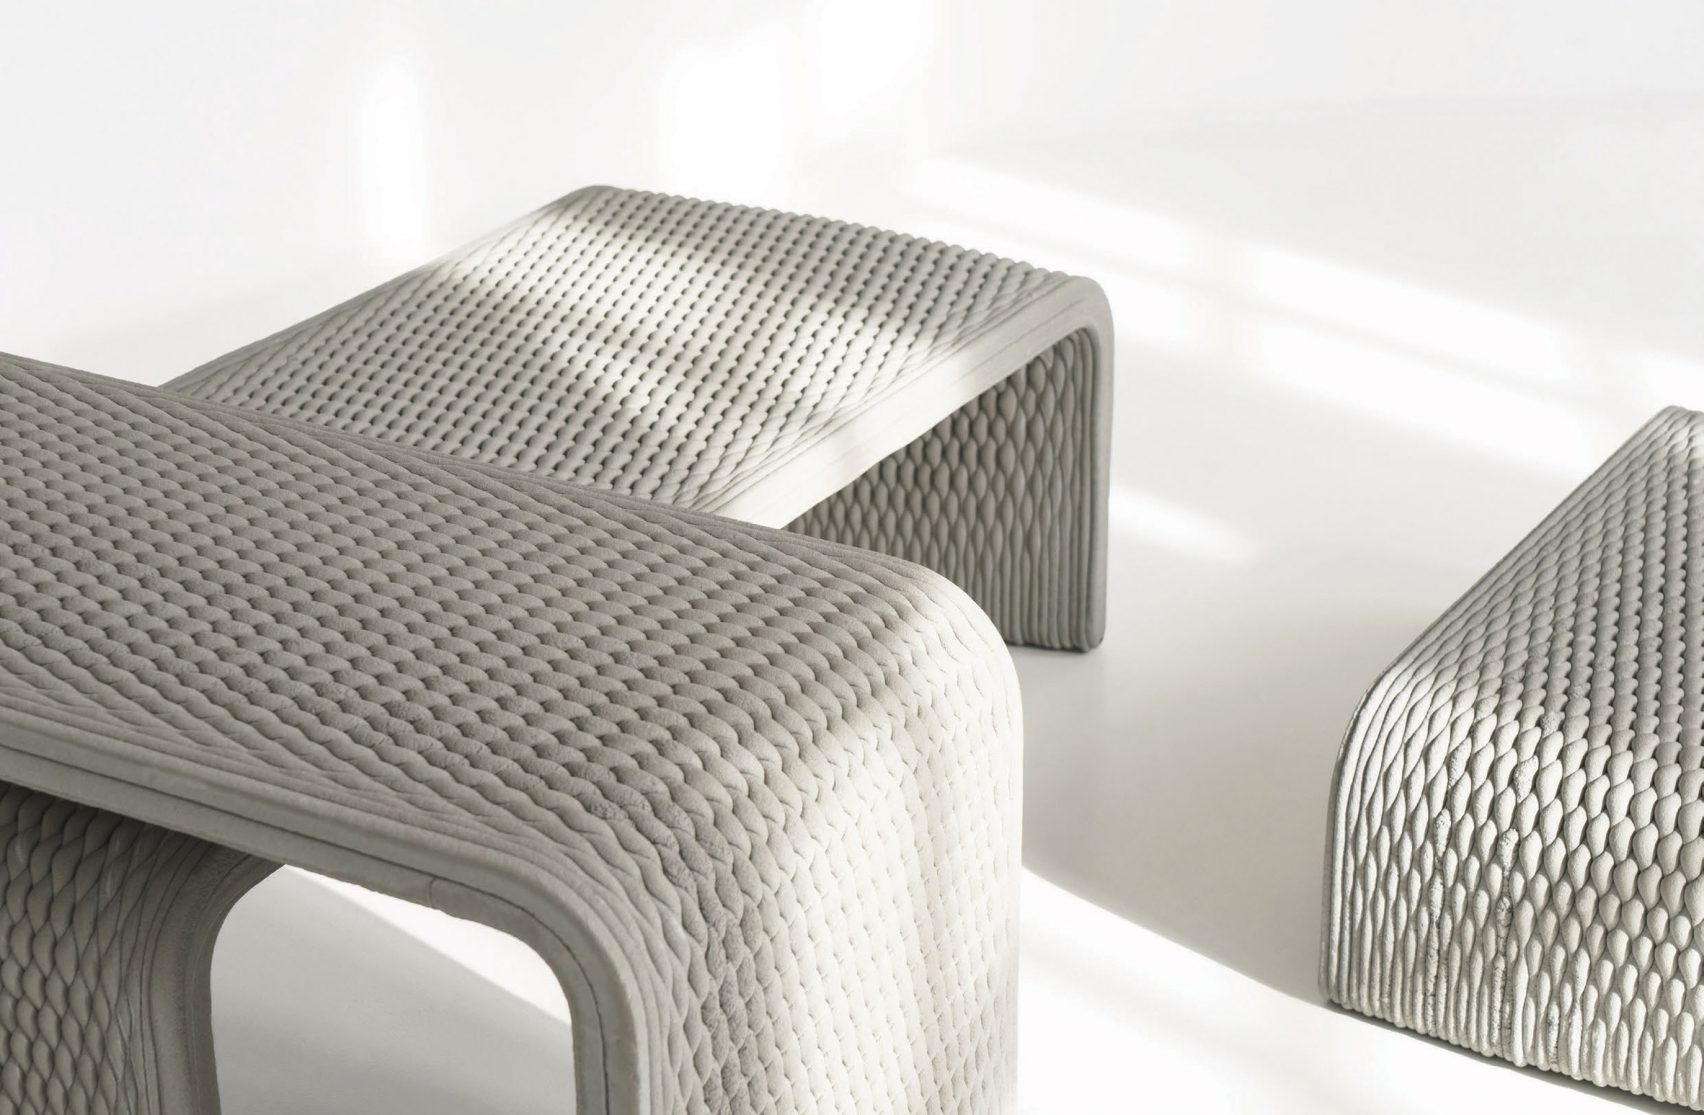 Колекция скамеек, выполненных из бетона на 3D-принтере